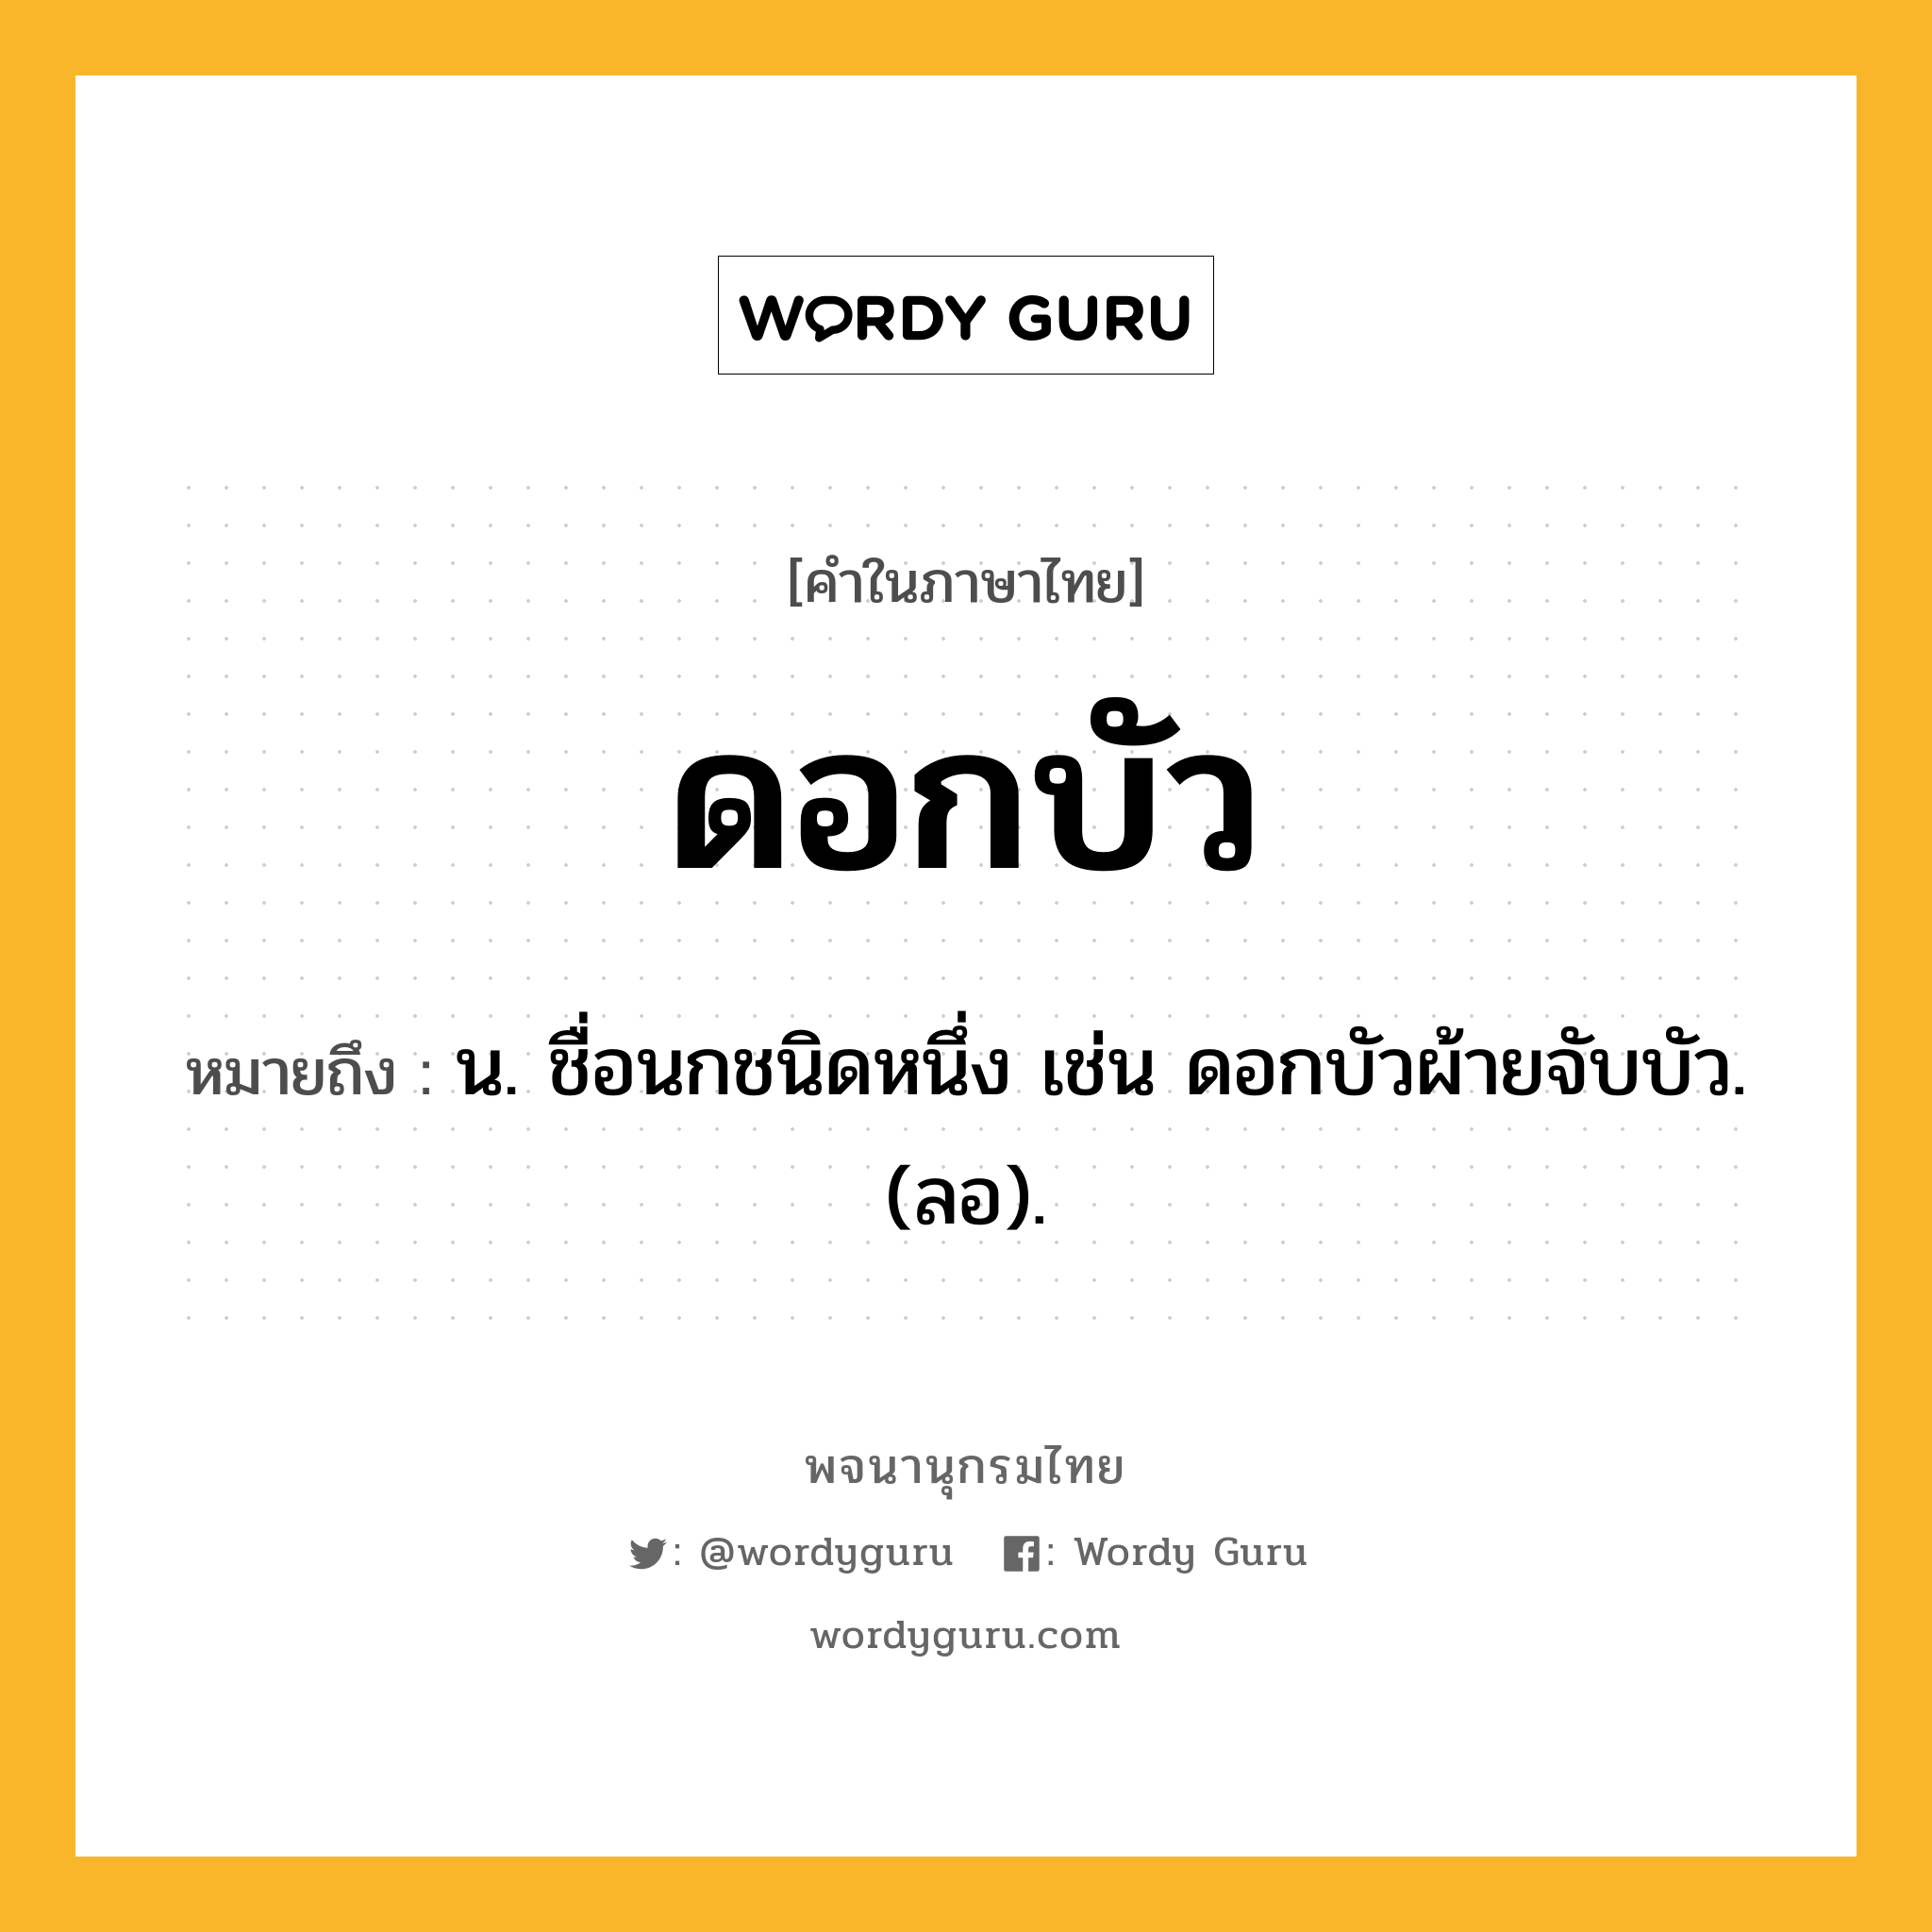 ดอกบัว ความหมาย หมายถึงอะไร?, คำในภาษาไทย ดอกบัว หมายถึง น. ชื่อนกชนิดหนึ่ง เช่น ดอกบัวผ้ายจับบัว. (ลอ).